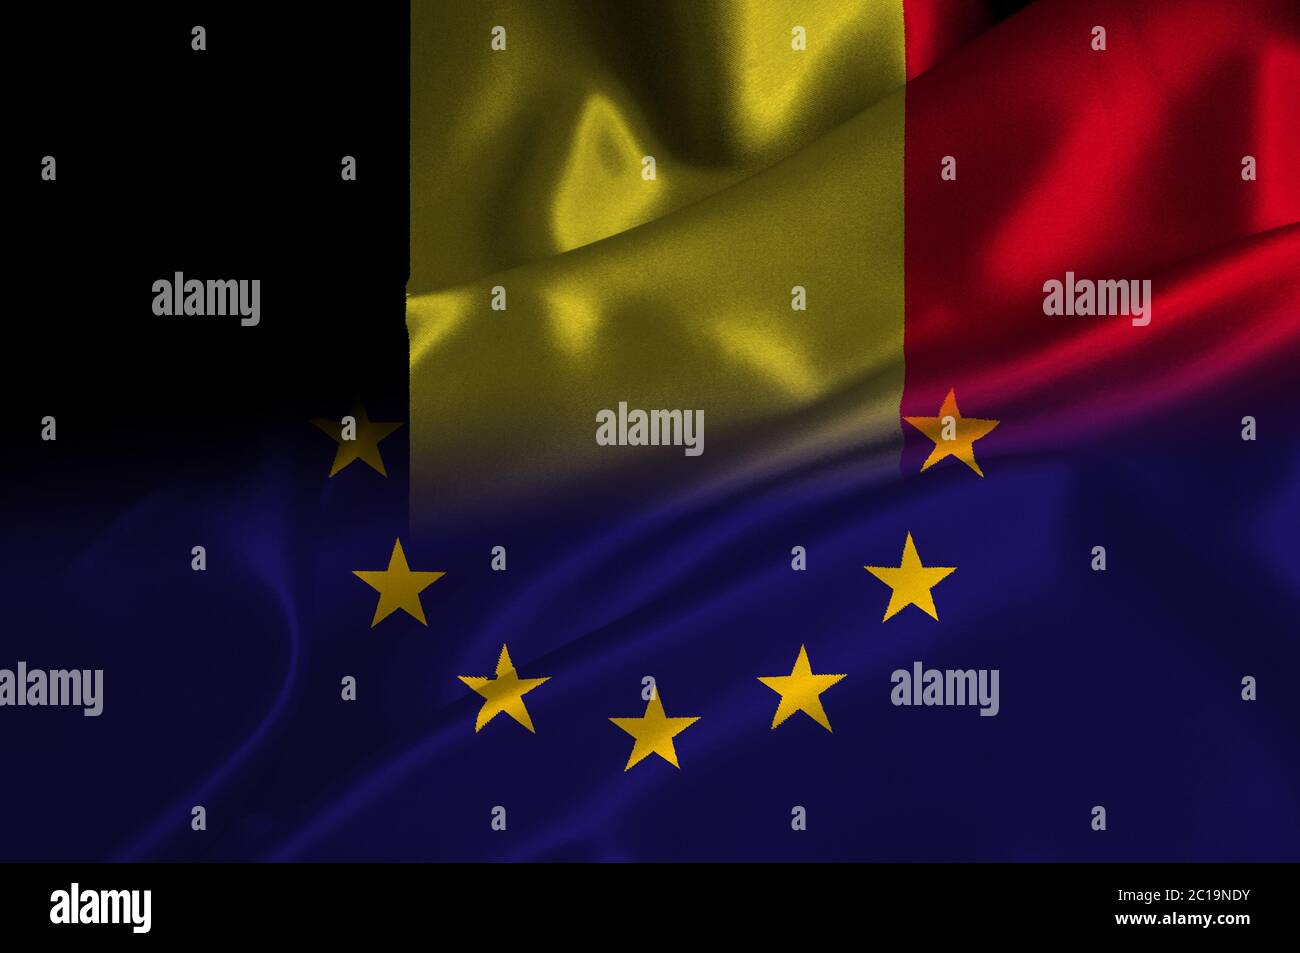 EU flag and Belgium flag on satin texture Stock Photo